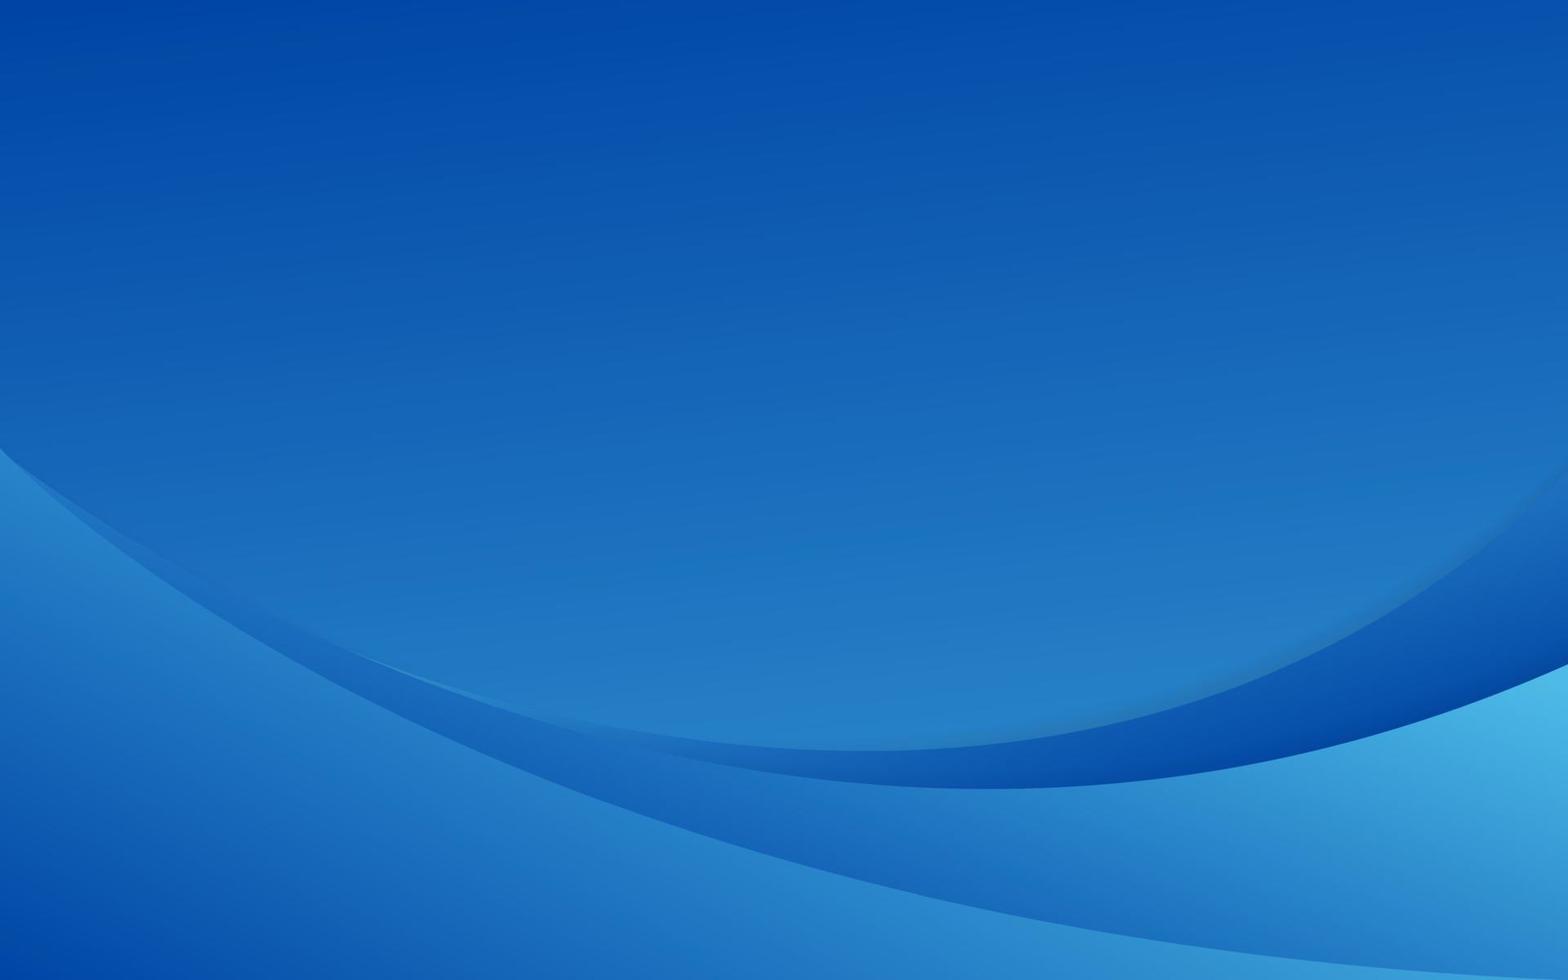 abstracte blauwe kromme overlappende achtergrond. moderne heldere gradiëntkunstachtergrond of banner voor zaken. vector illustratie